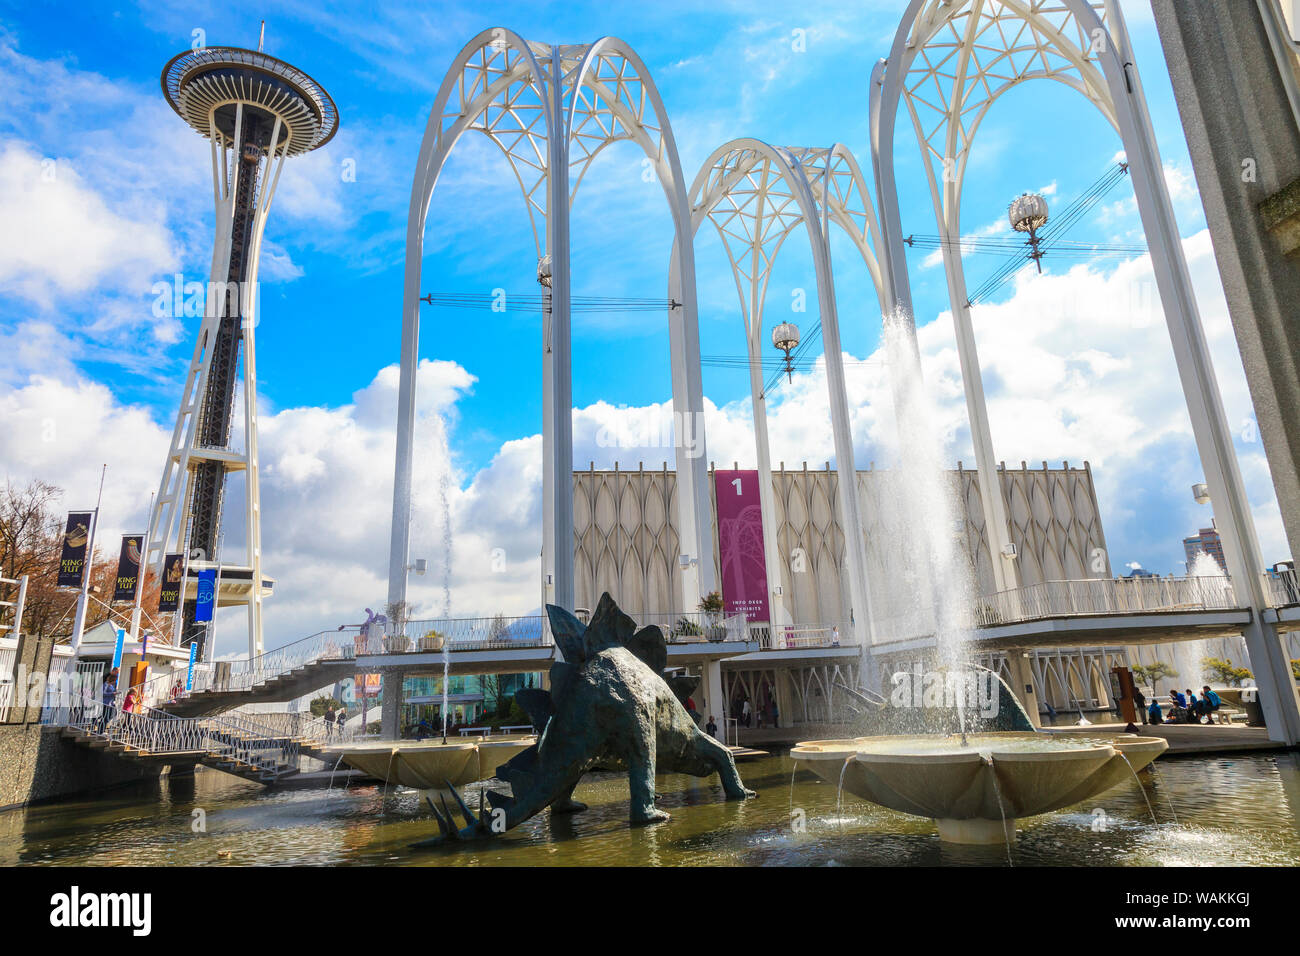 Fontaines et sculptures de dinosaures à la Pacific Science Center, Seattle Center, Washington State, USA Banque D'Images